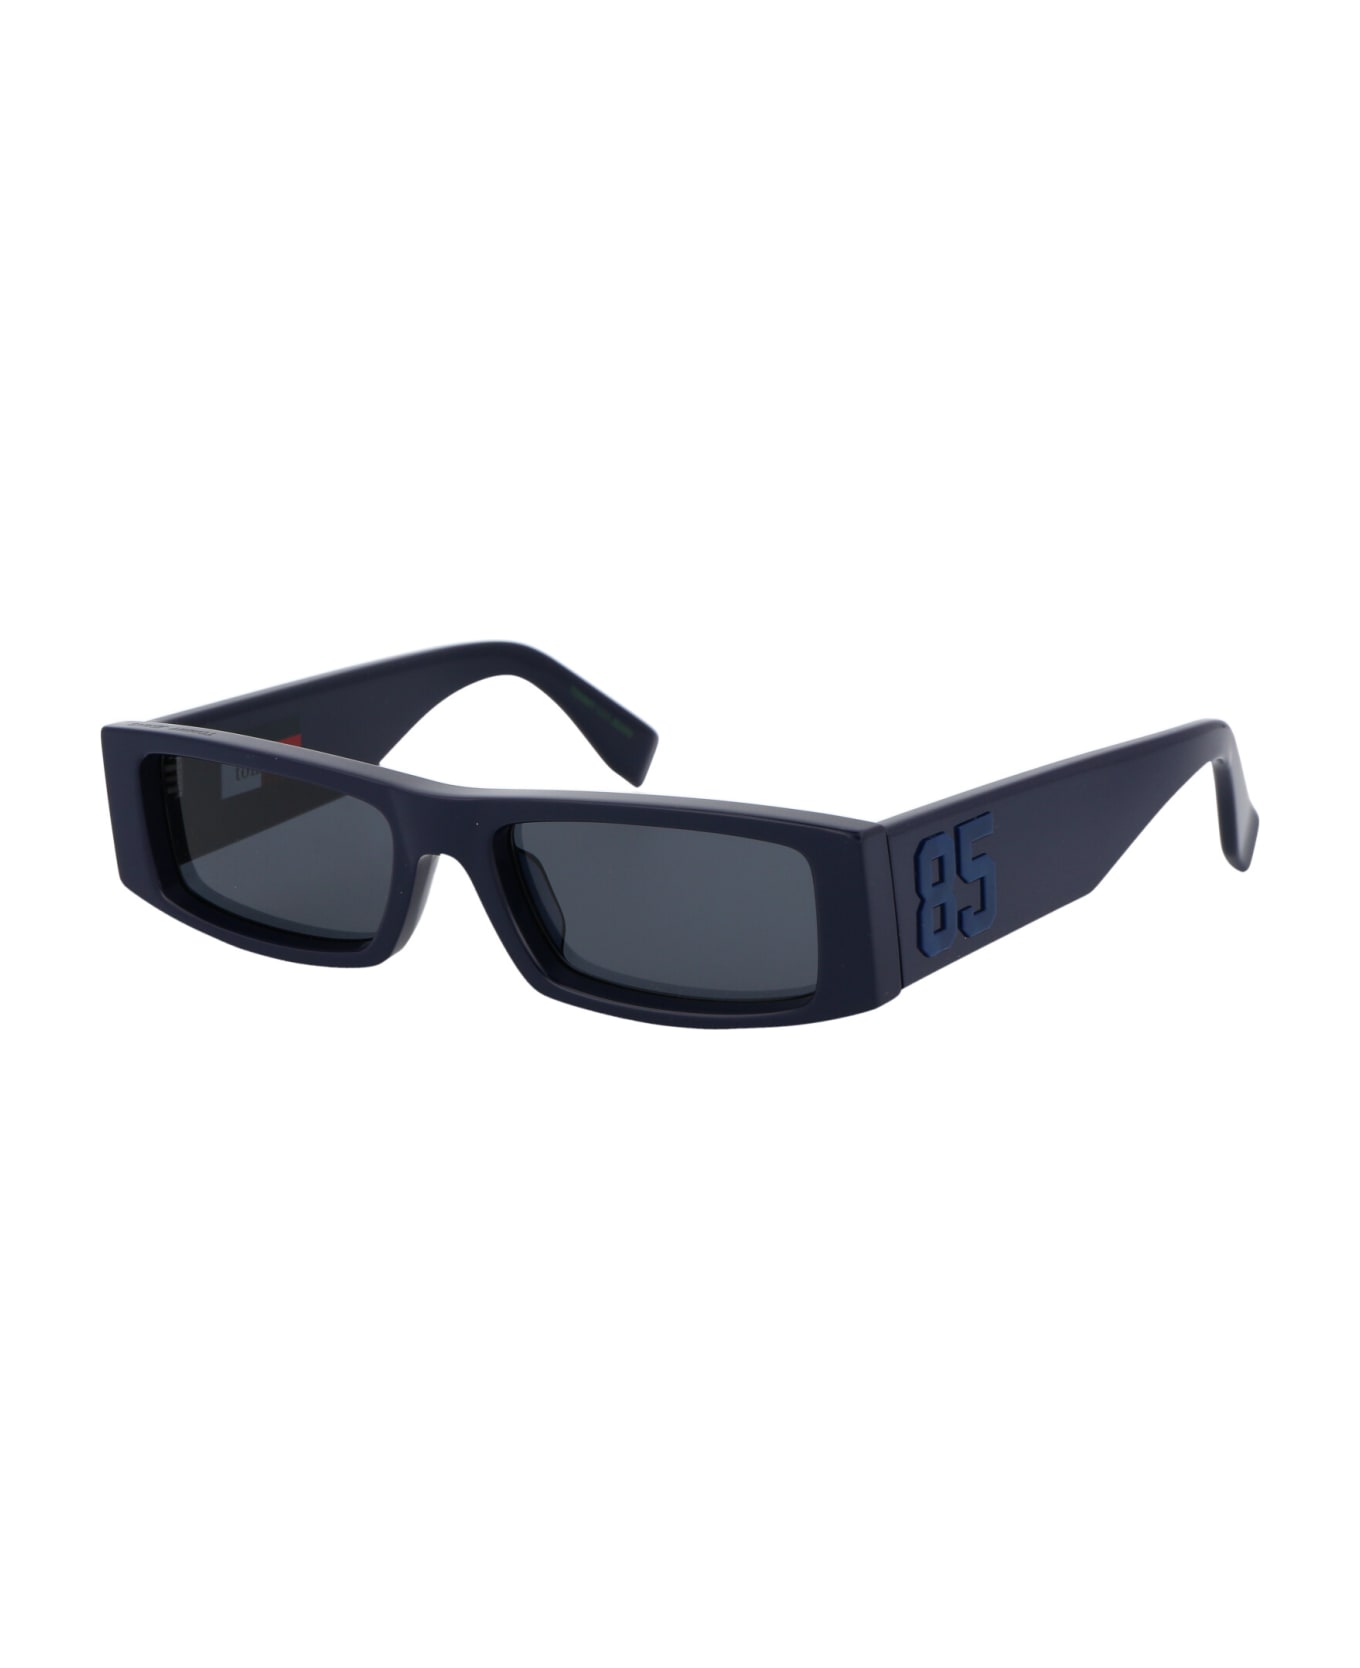 Tommy Hilfiger Tj 0092/s Sunglasses - PJPIR BLUE